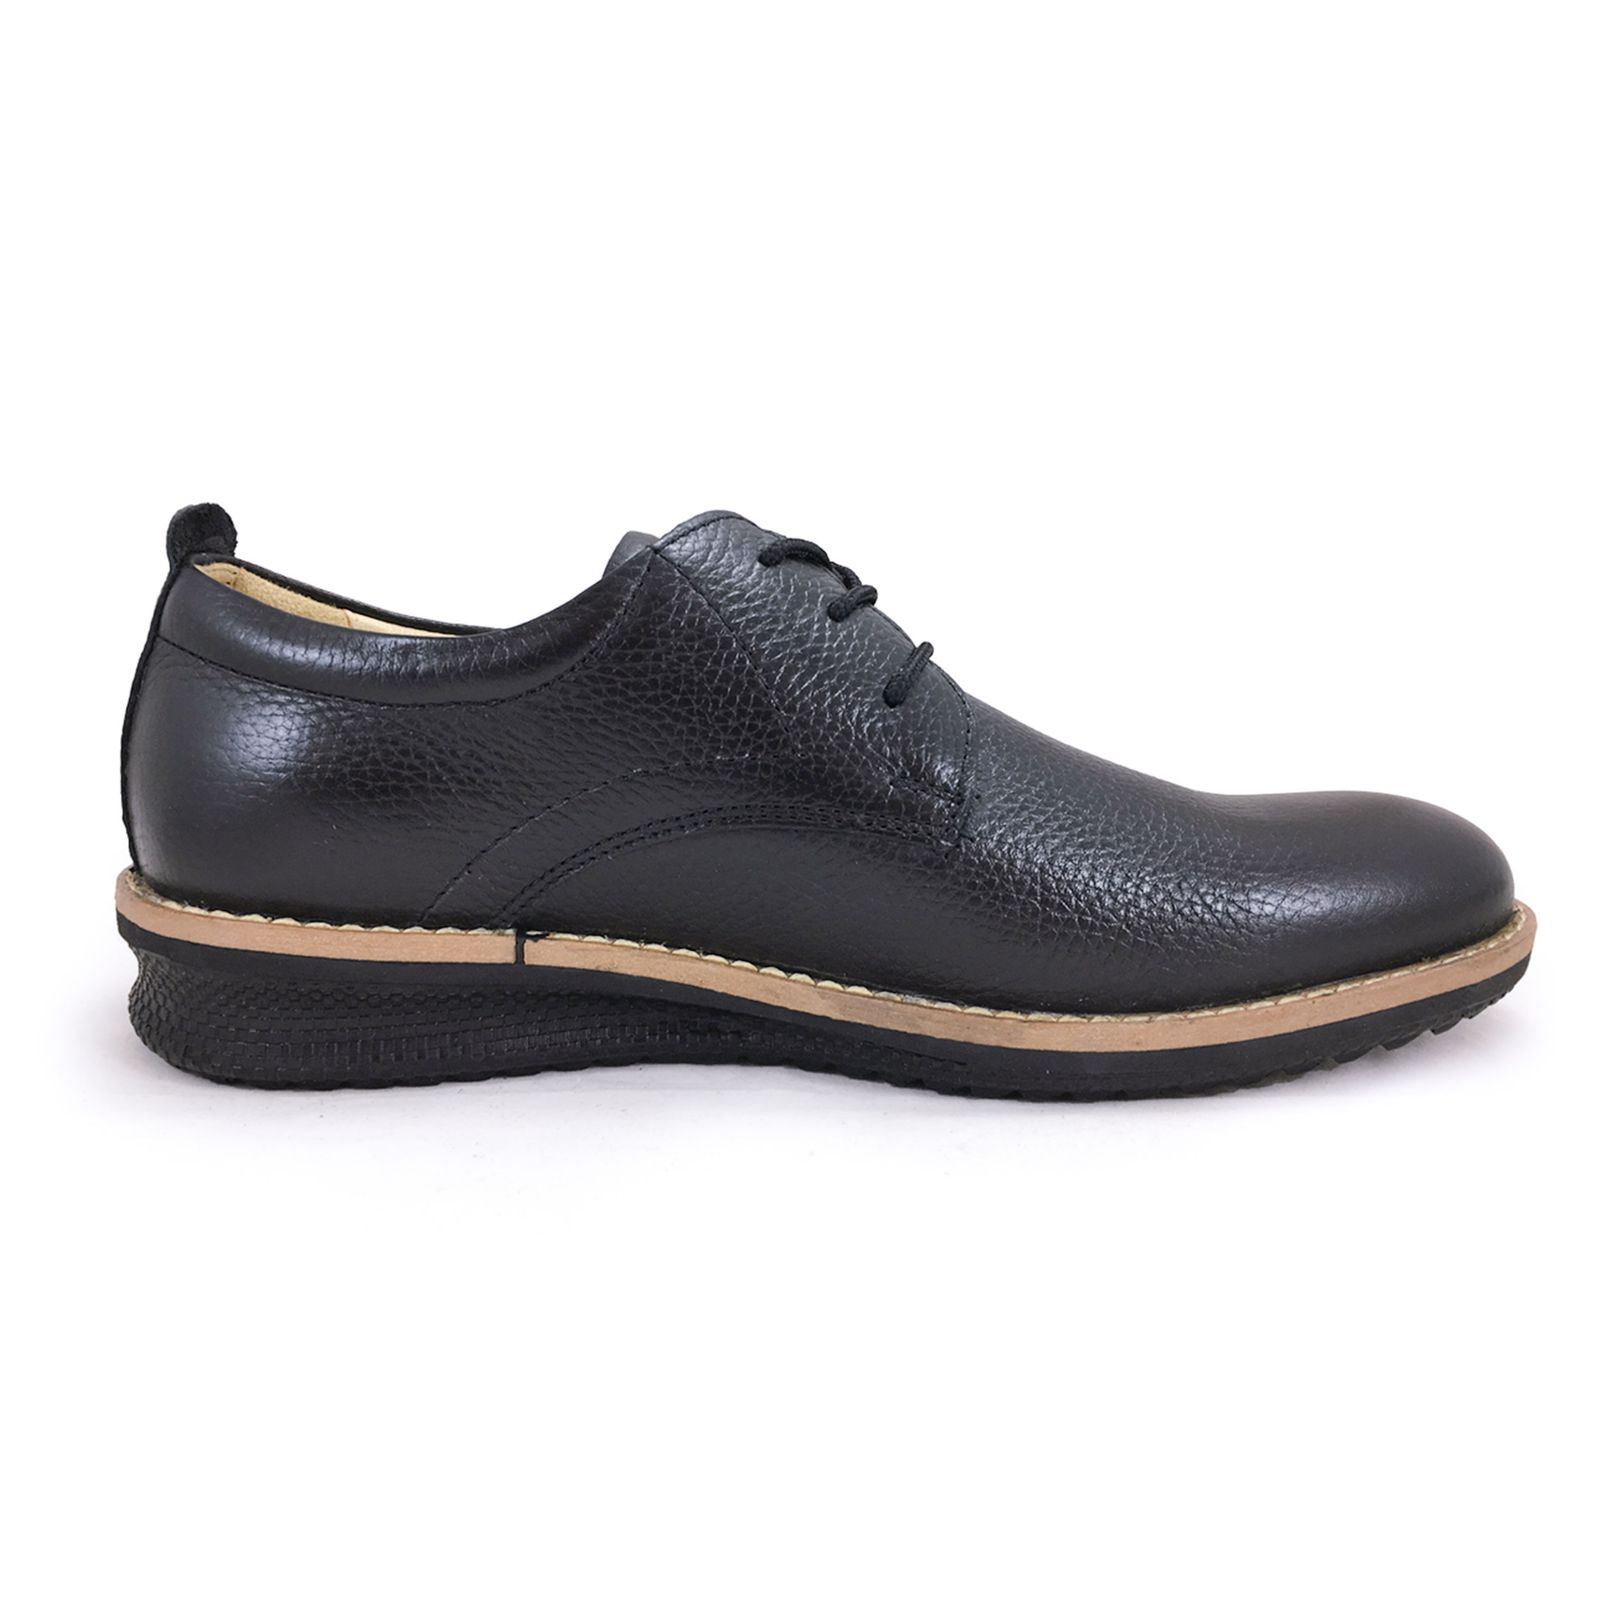 کفش روزمره مردانه شرکت کفش البرز مدل HMN کد 2924-3 -  - 5